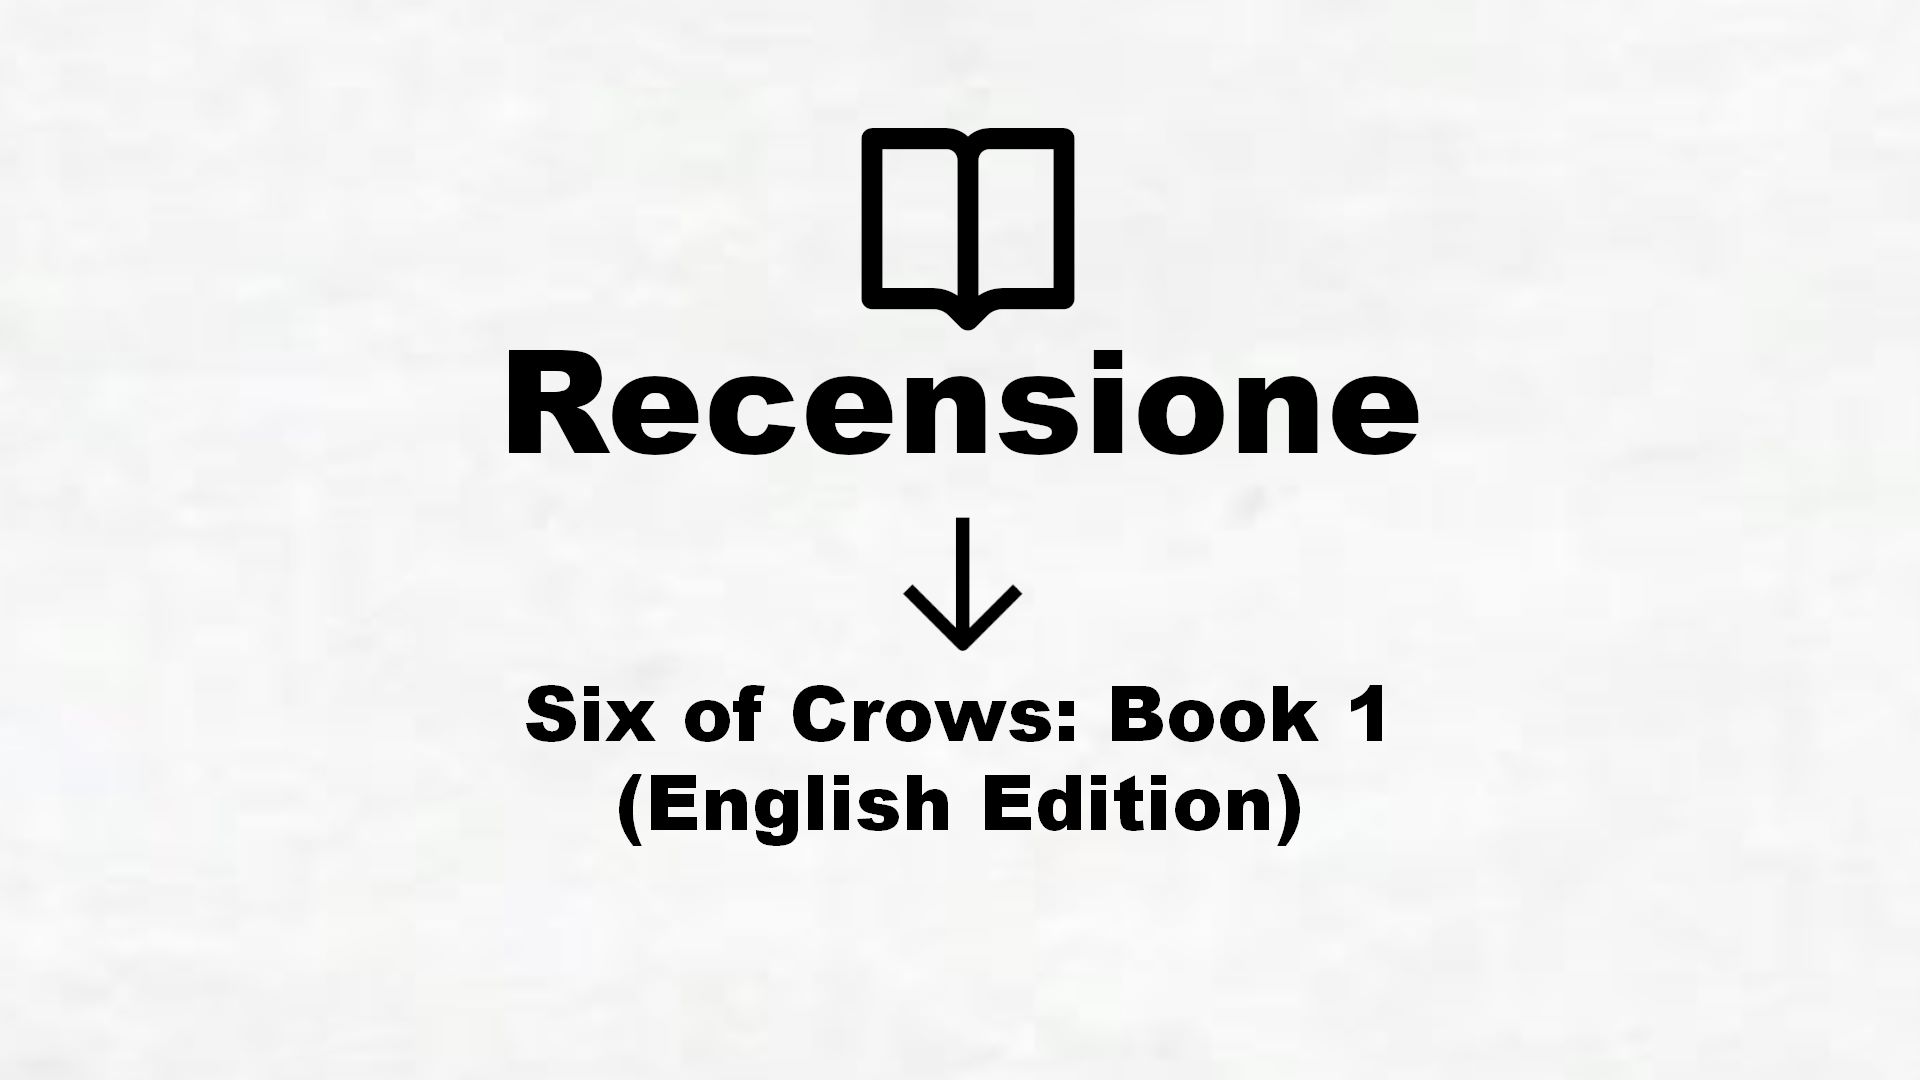 Six of Crows: Book 1 (English Edition) – Recensione Libro